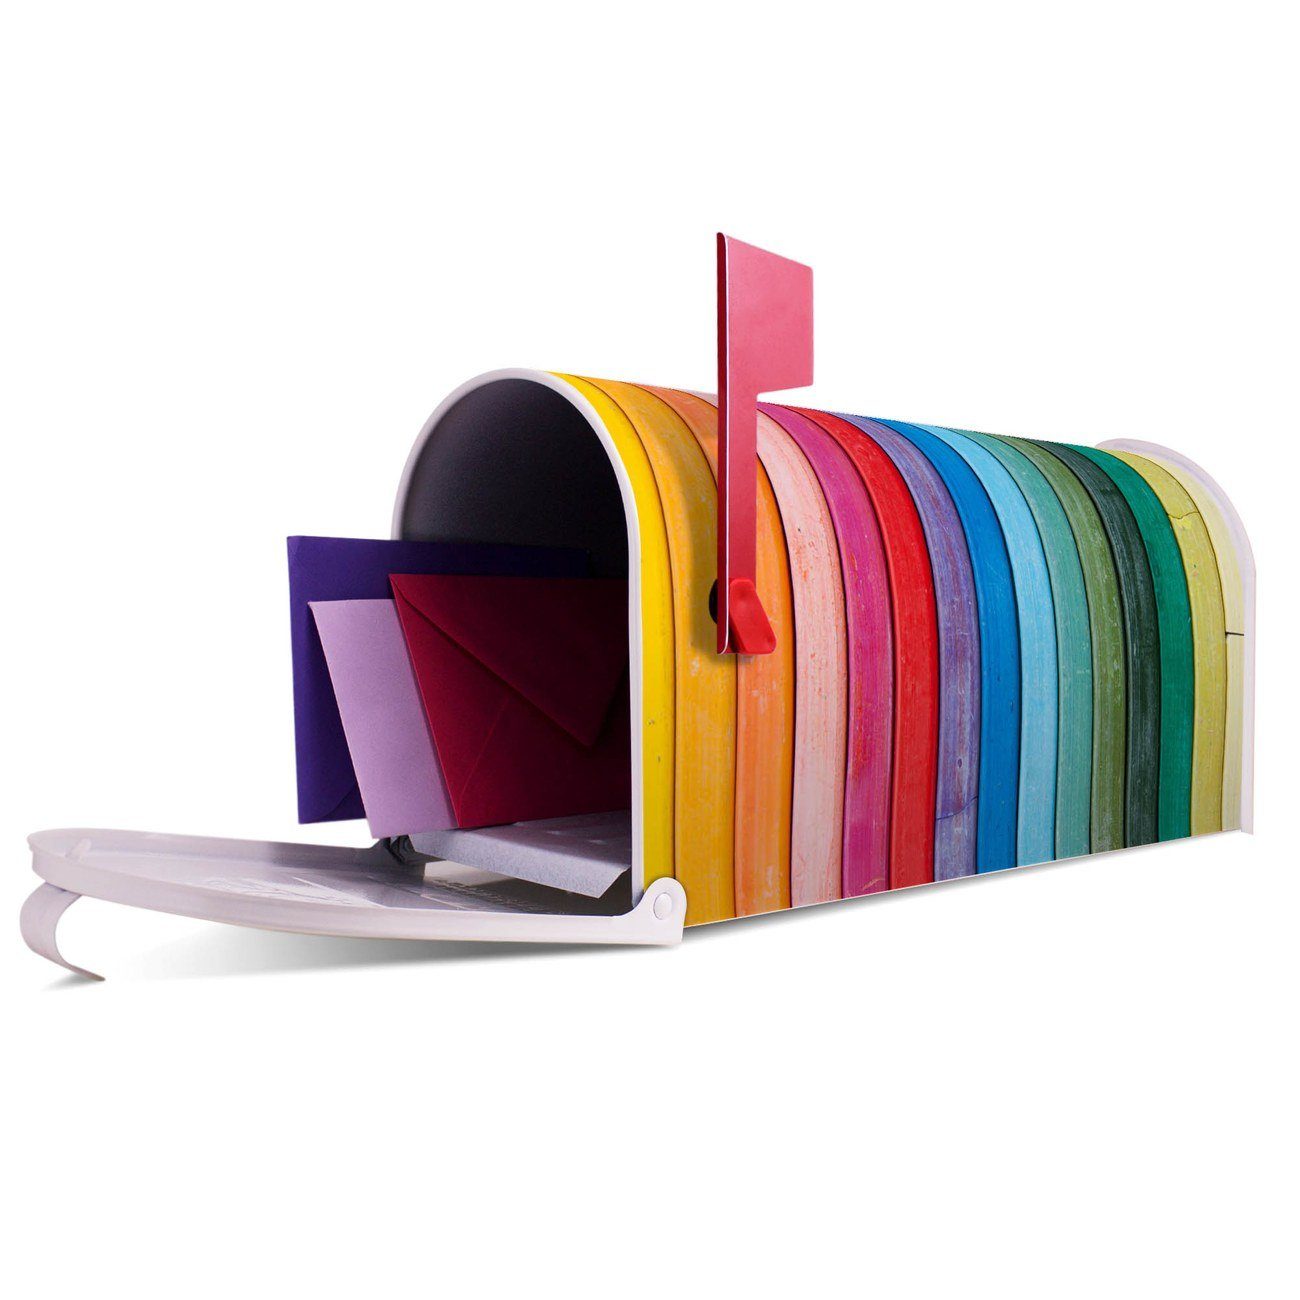 Amerikanischer Mississippi banjado 51 (Amerikanischer Mailbox original Briefkasten Briefkasten, 17 22 aus cm x x USA), weiß Regenbogenfarben